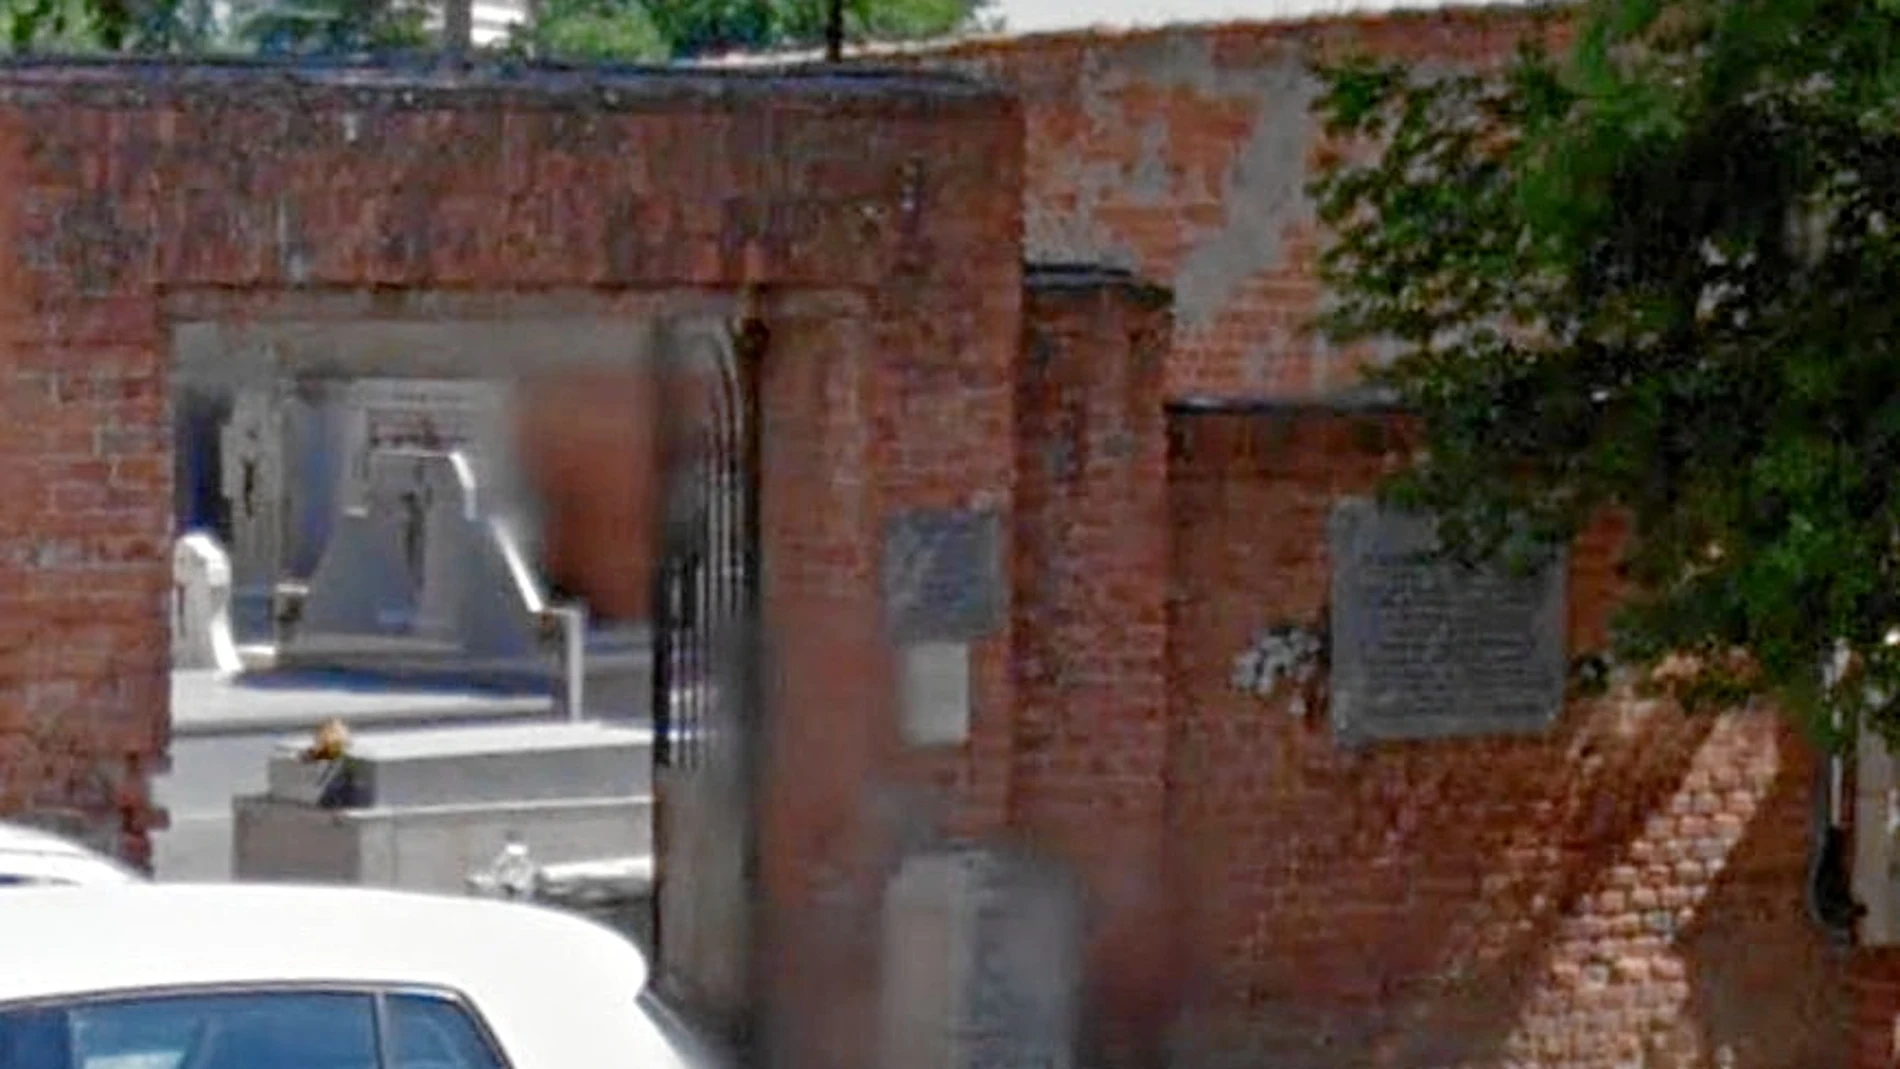 El viernes pasado los operarios del Ayuntamiento acudieron al cementerio de Carabanchel y retiraron la placa a los carmelitas fusilados en 1936 tras asegurar al párroco que se la llevaban a restaurar